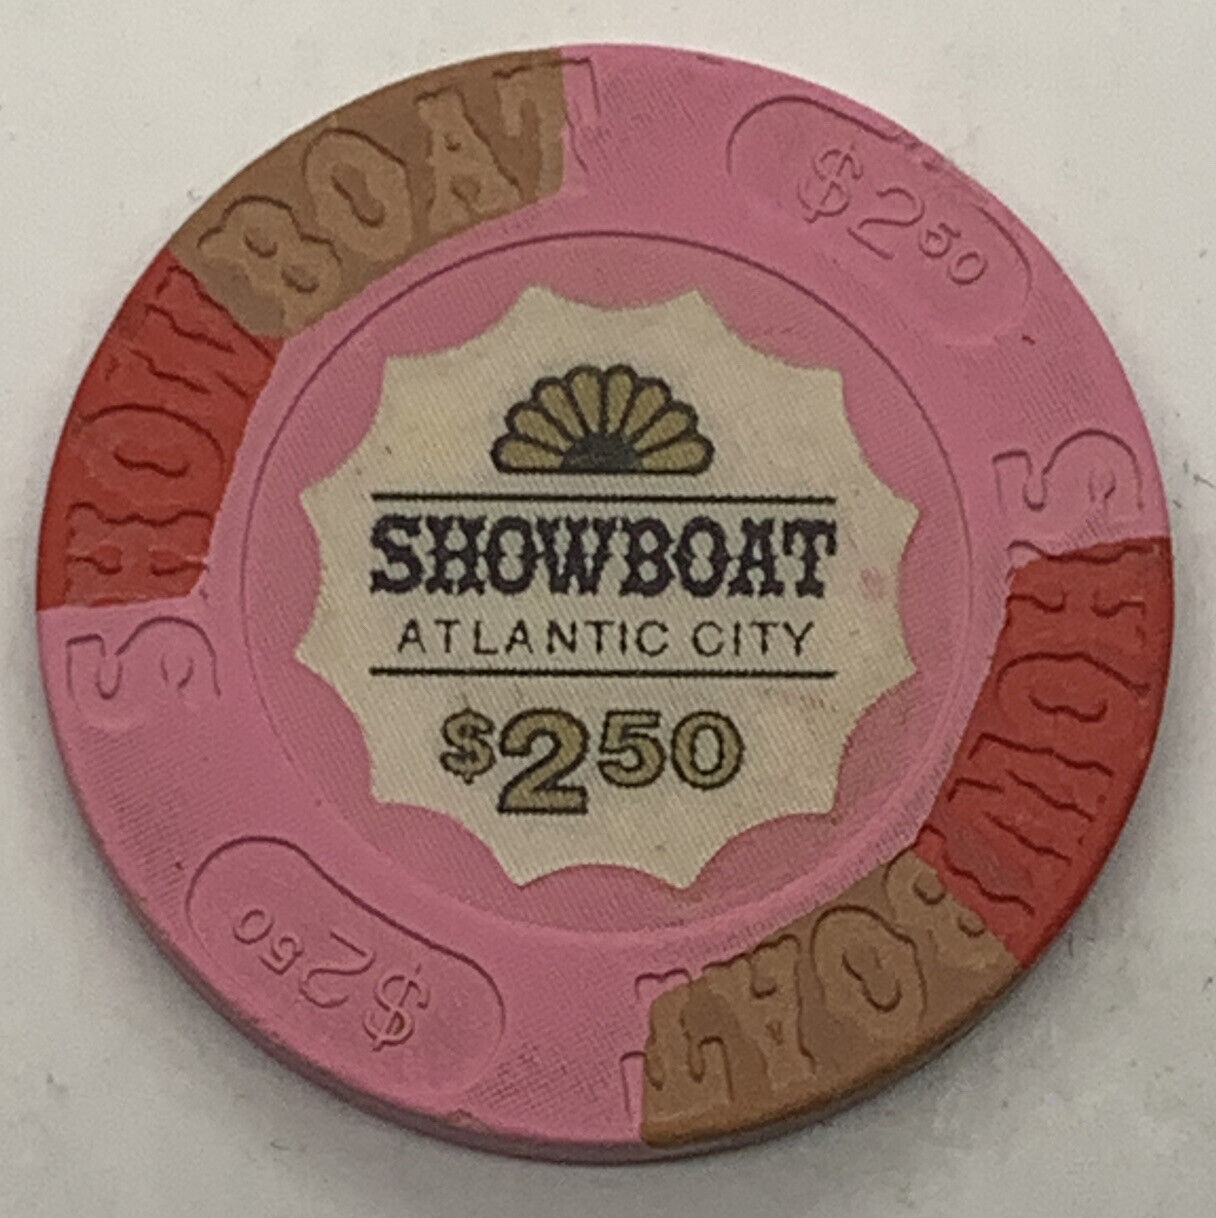 Showboat Atlantic City Casino $2.50 Chip - Atlantic City New Jersey House Mold